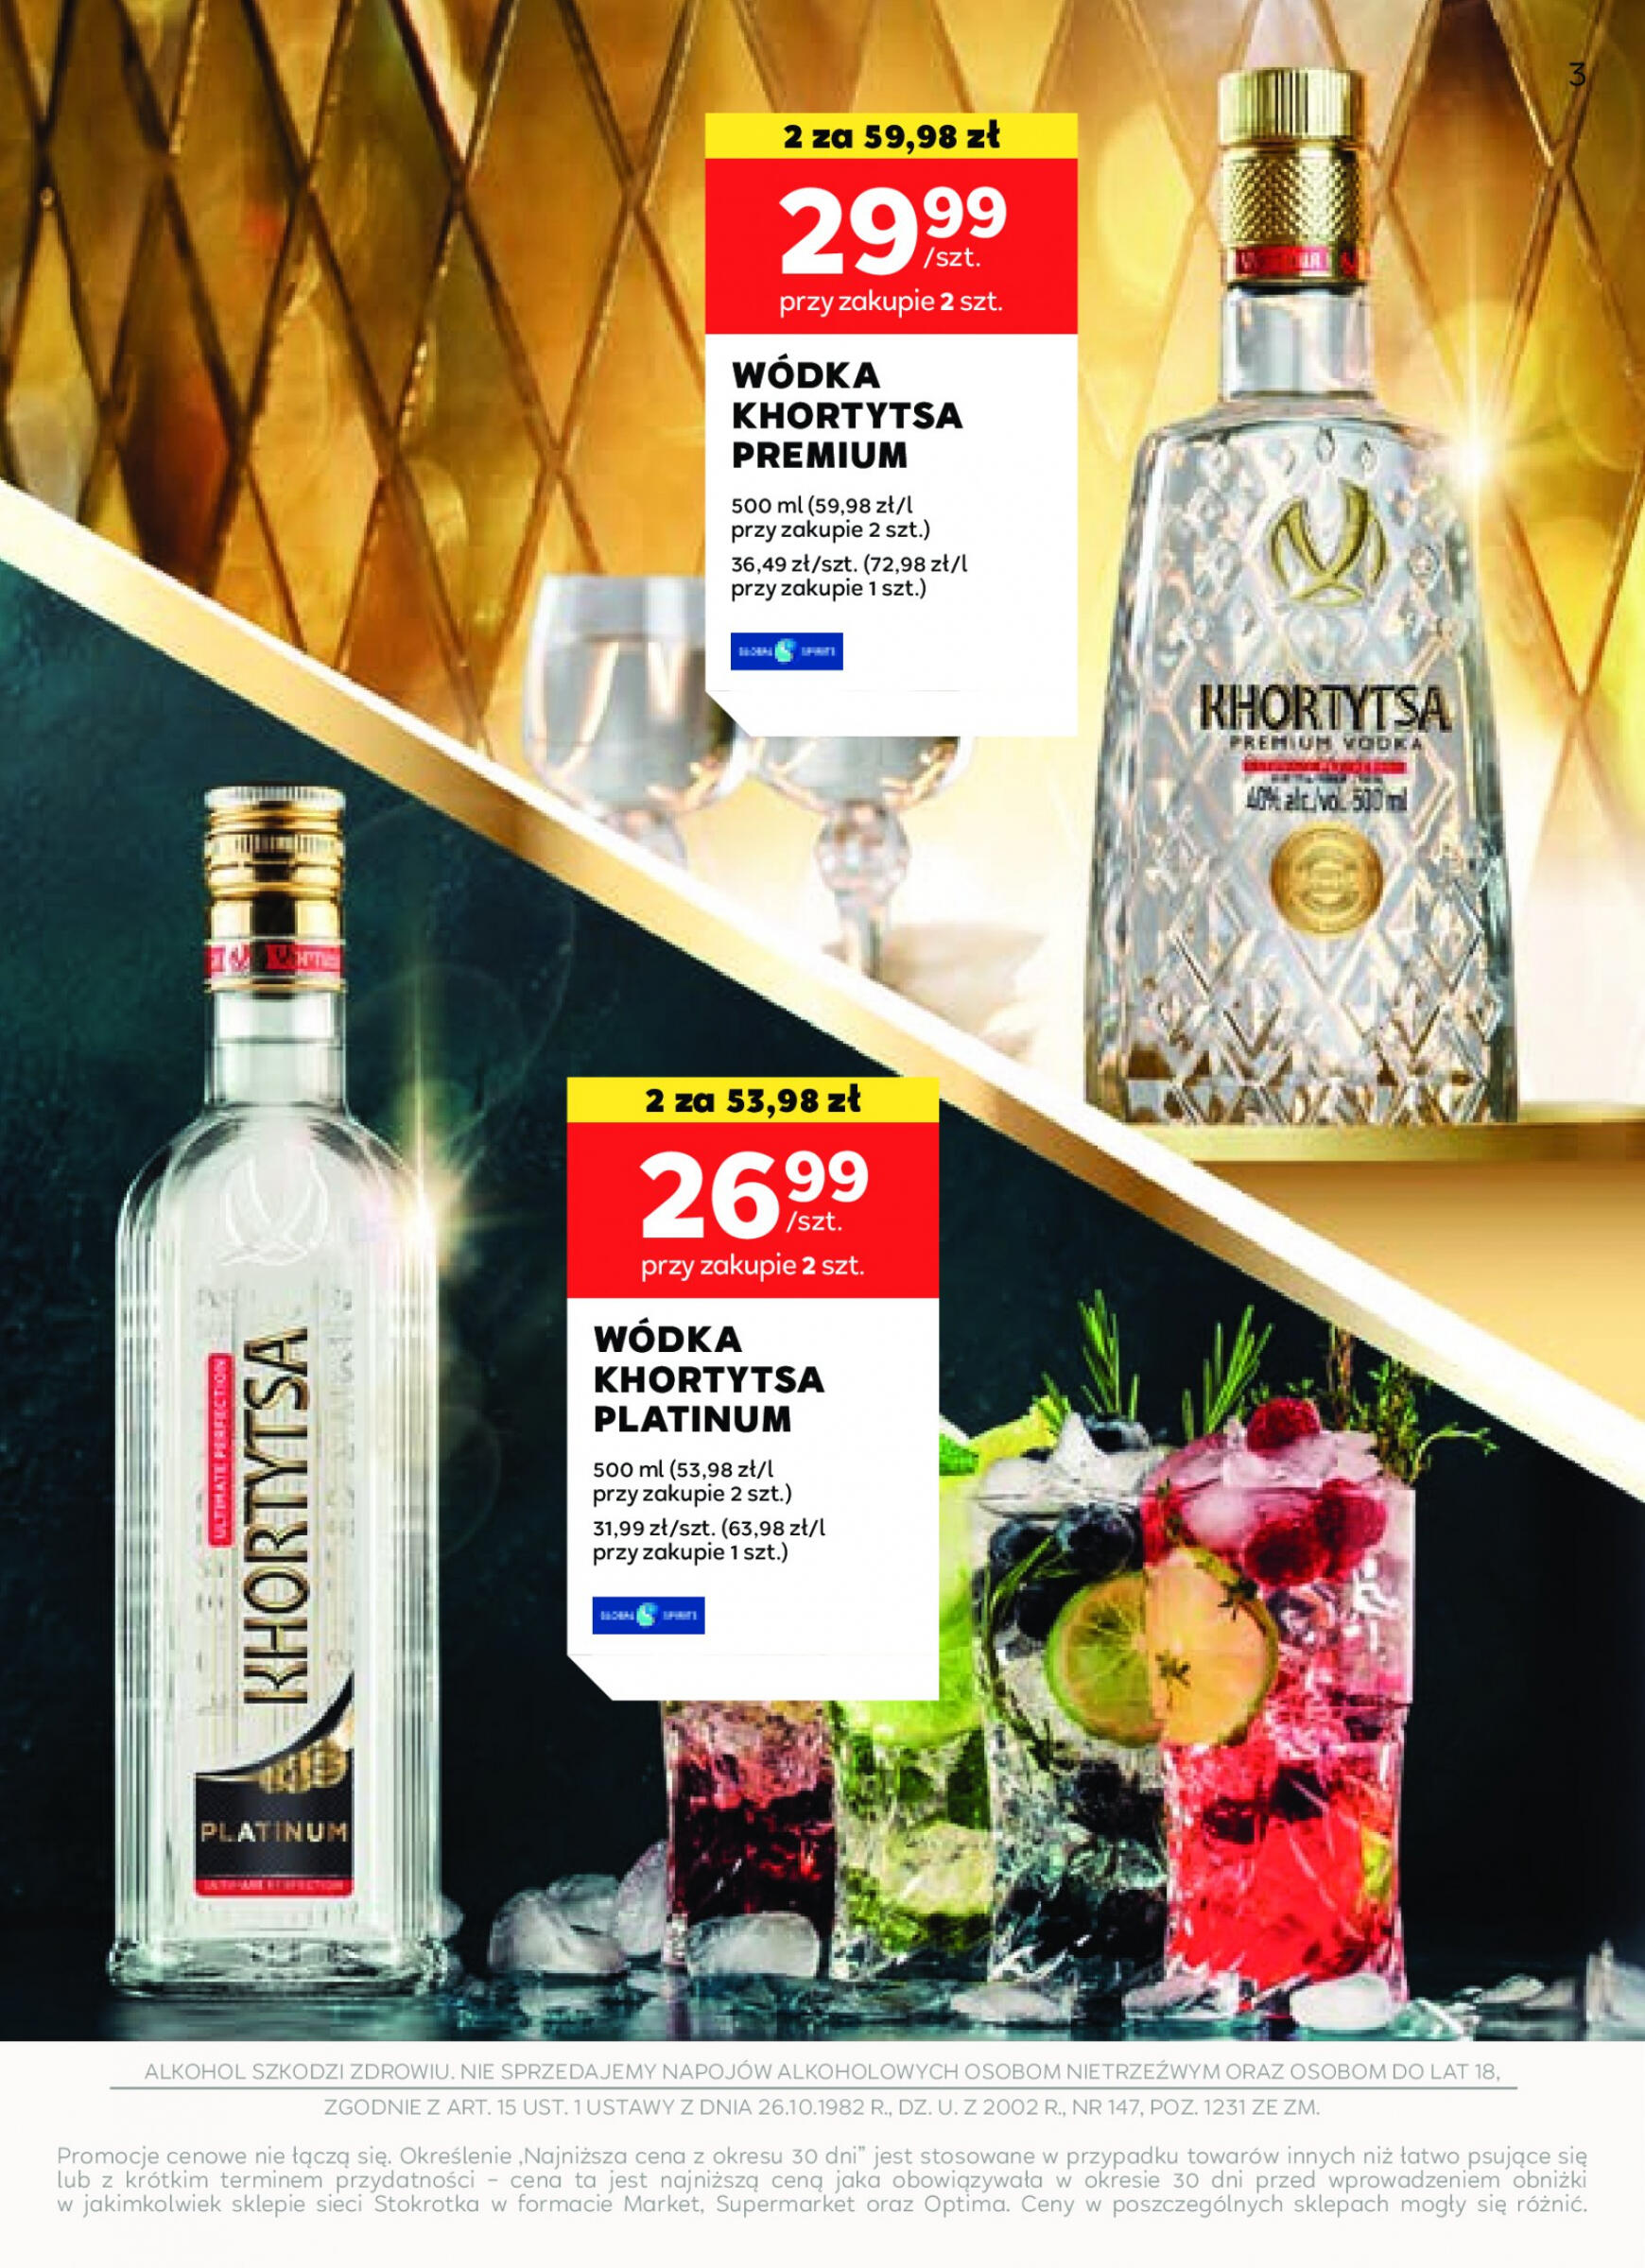 stokrotka - Stokrotka Supermarket - Oferta alkoholowa gazetka aktualna ważna od 25.04. - 22.05. - page: 3